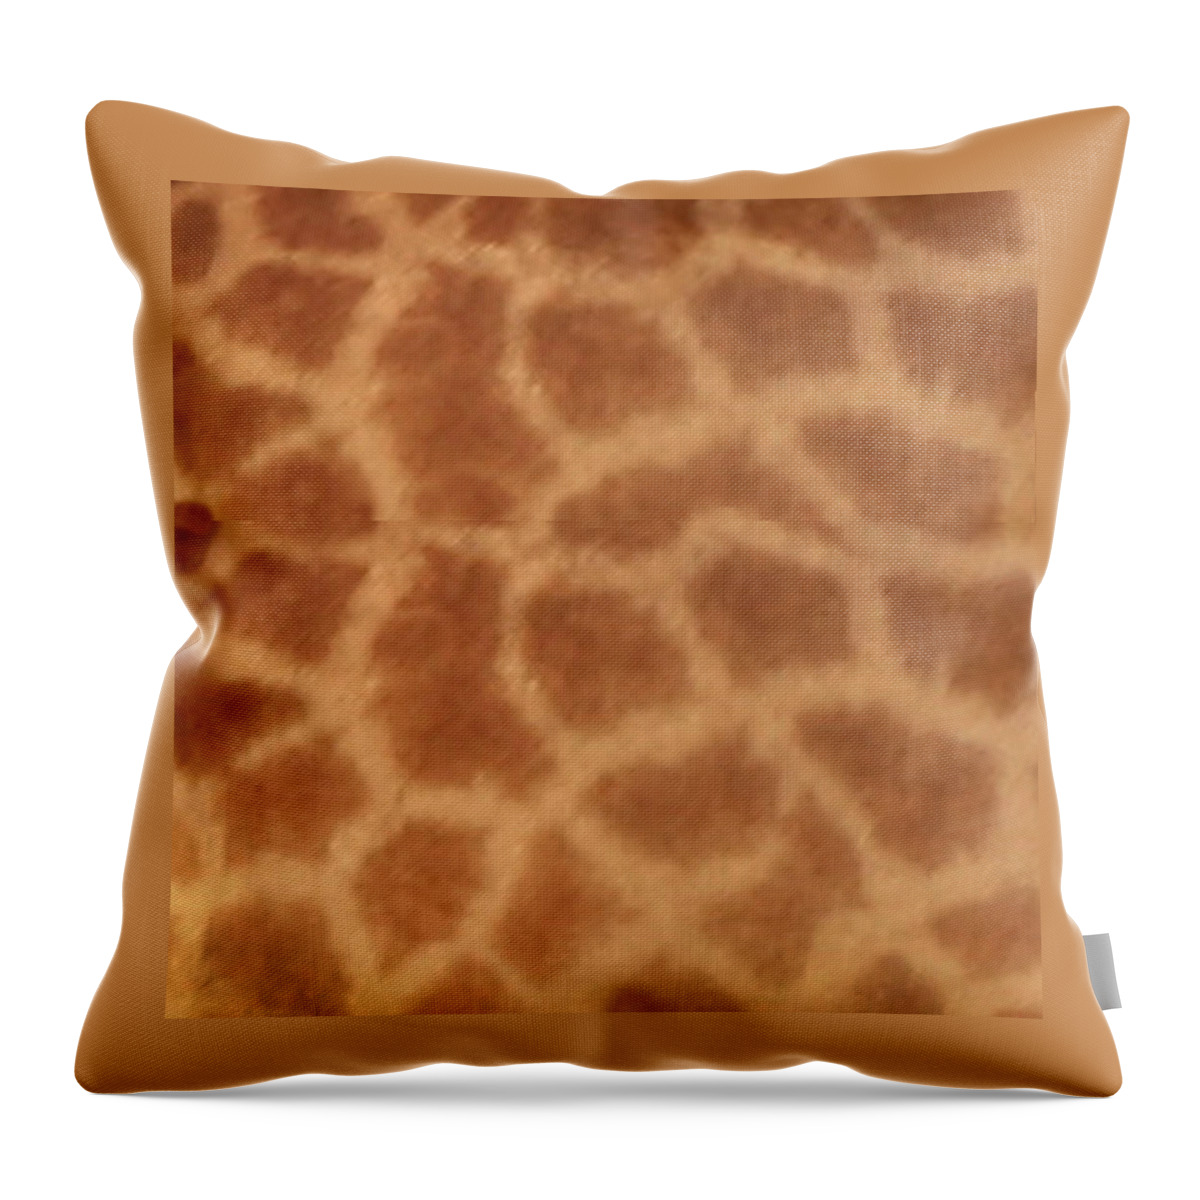 Giraffe Throw Pillow featuring the photograph Giraffe Print by Karen Zuk Rosenblatt